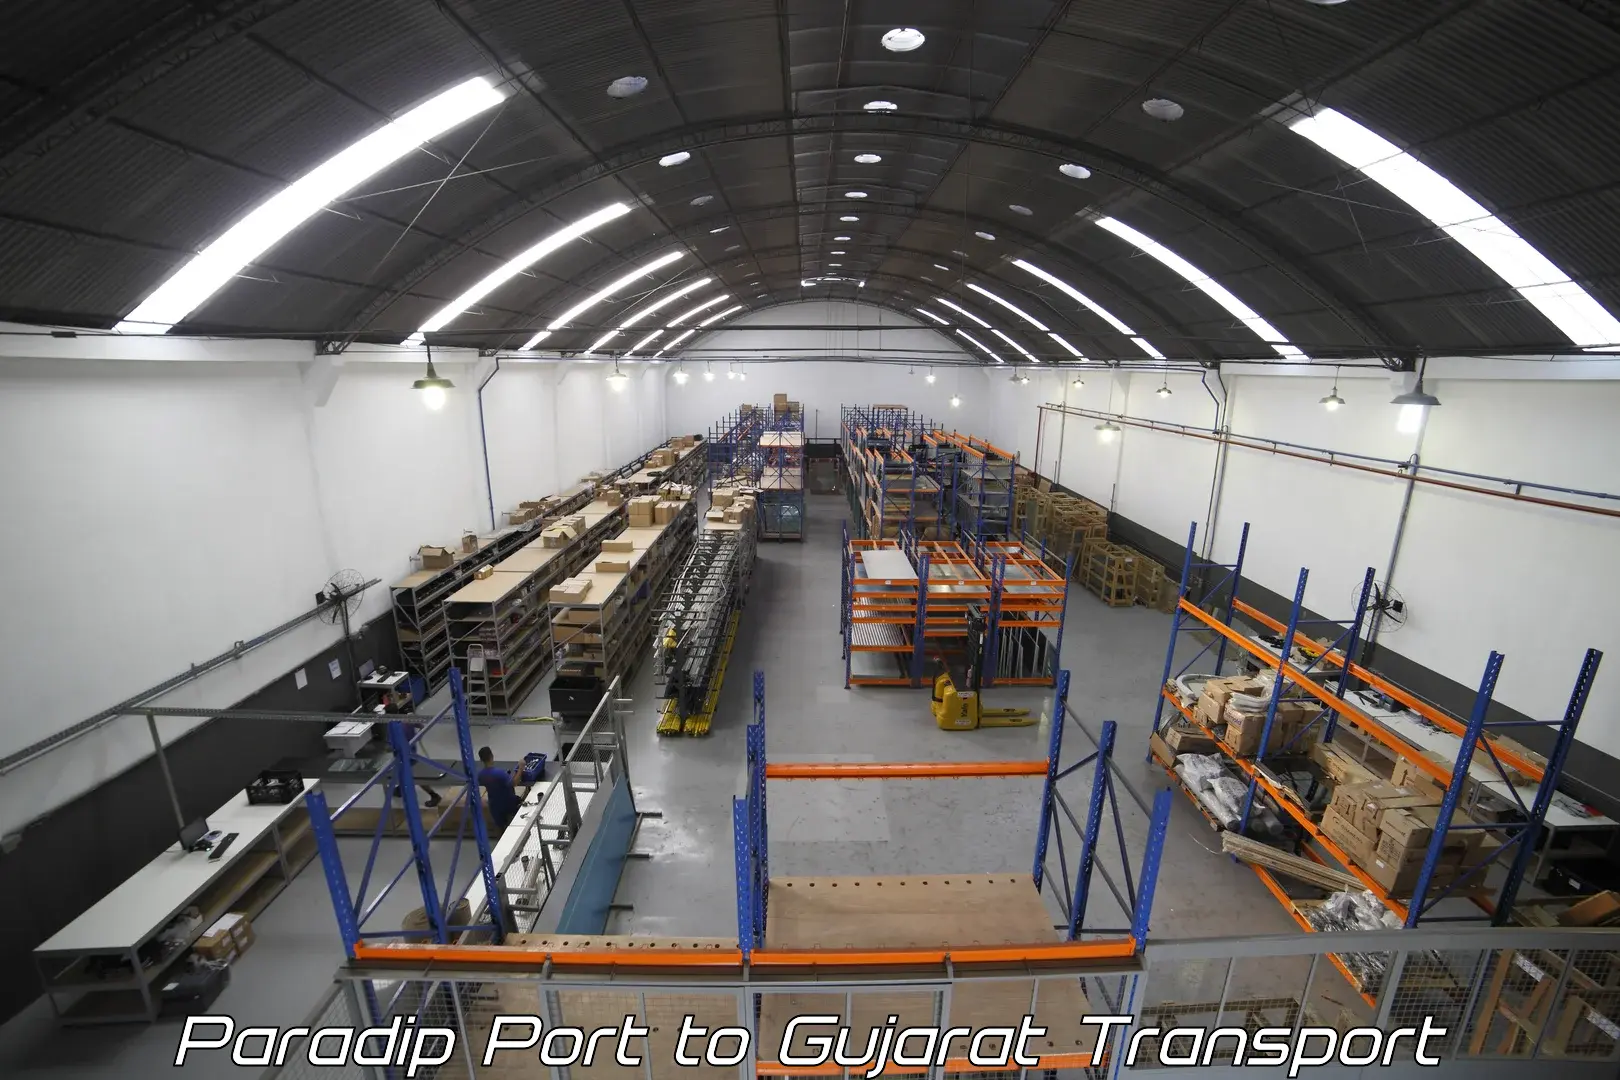 Furniture transport service Paradip Port to Dhrangadhra